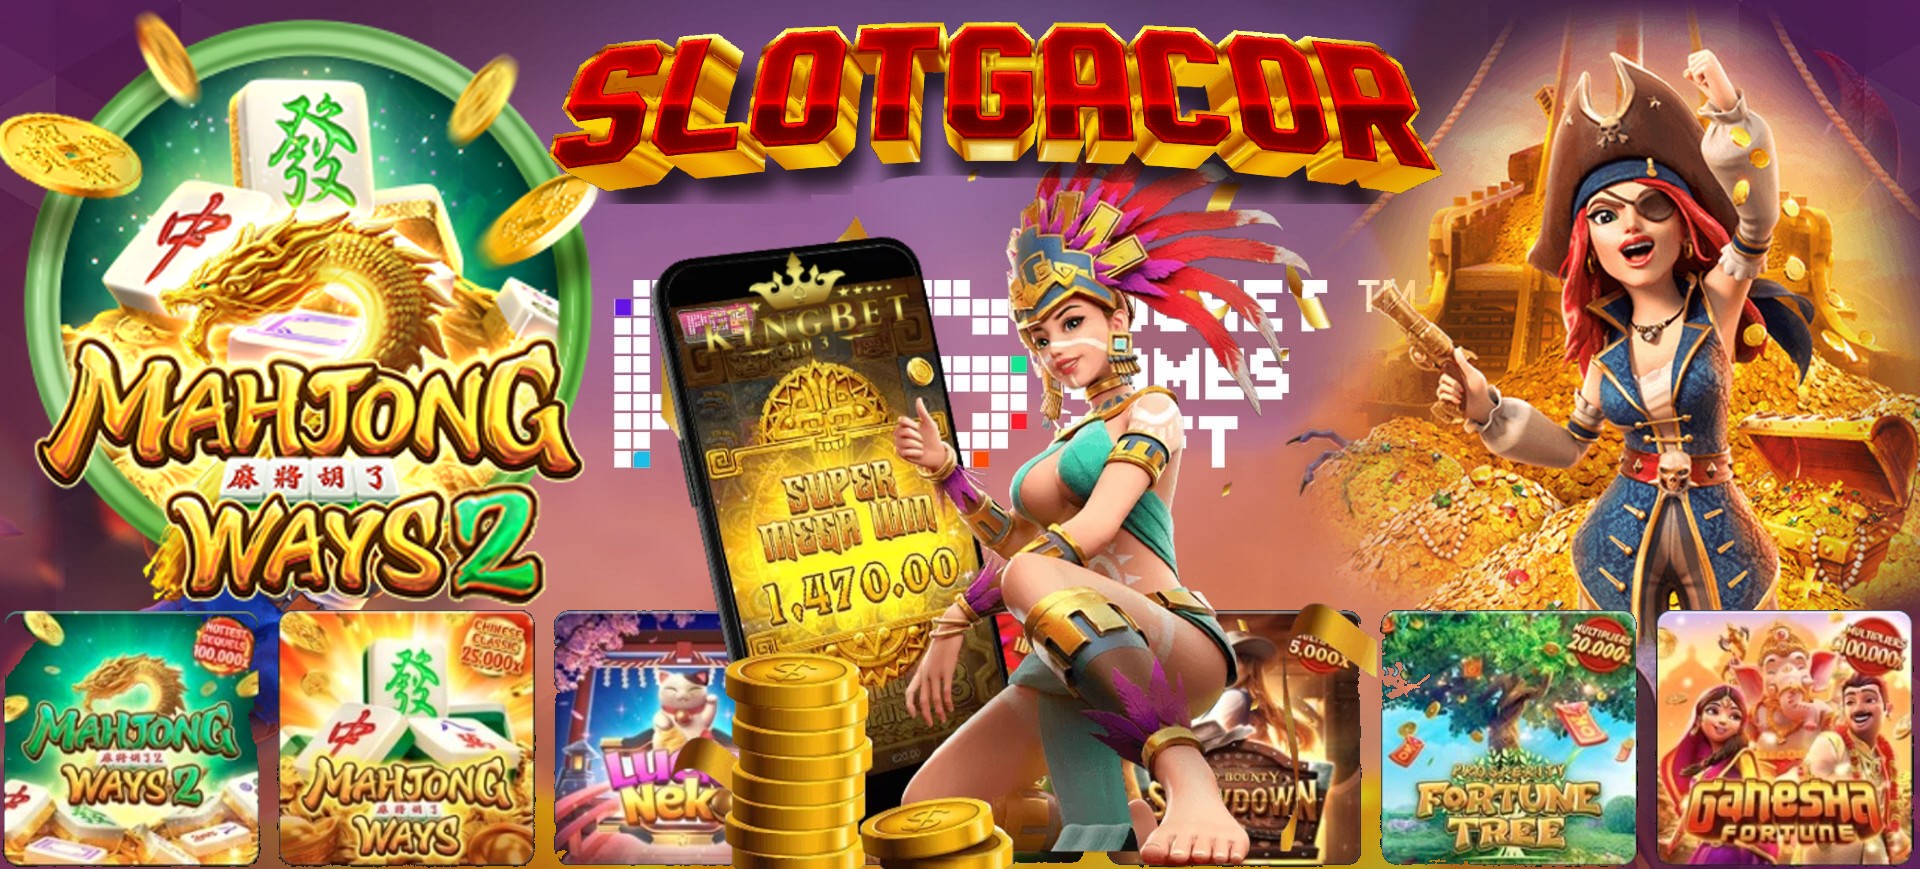 Slot PG Soft Mahjong Bet 200 Rupiah